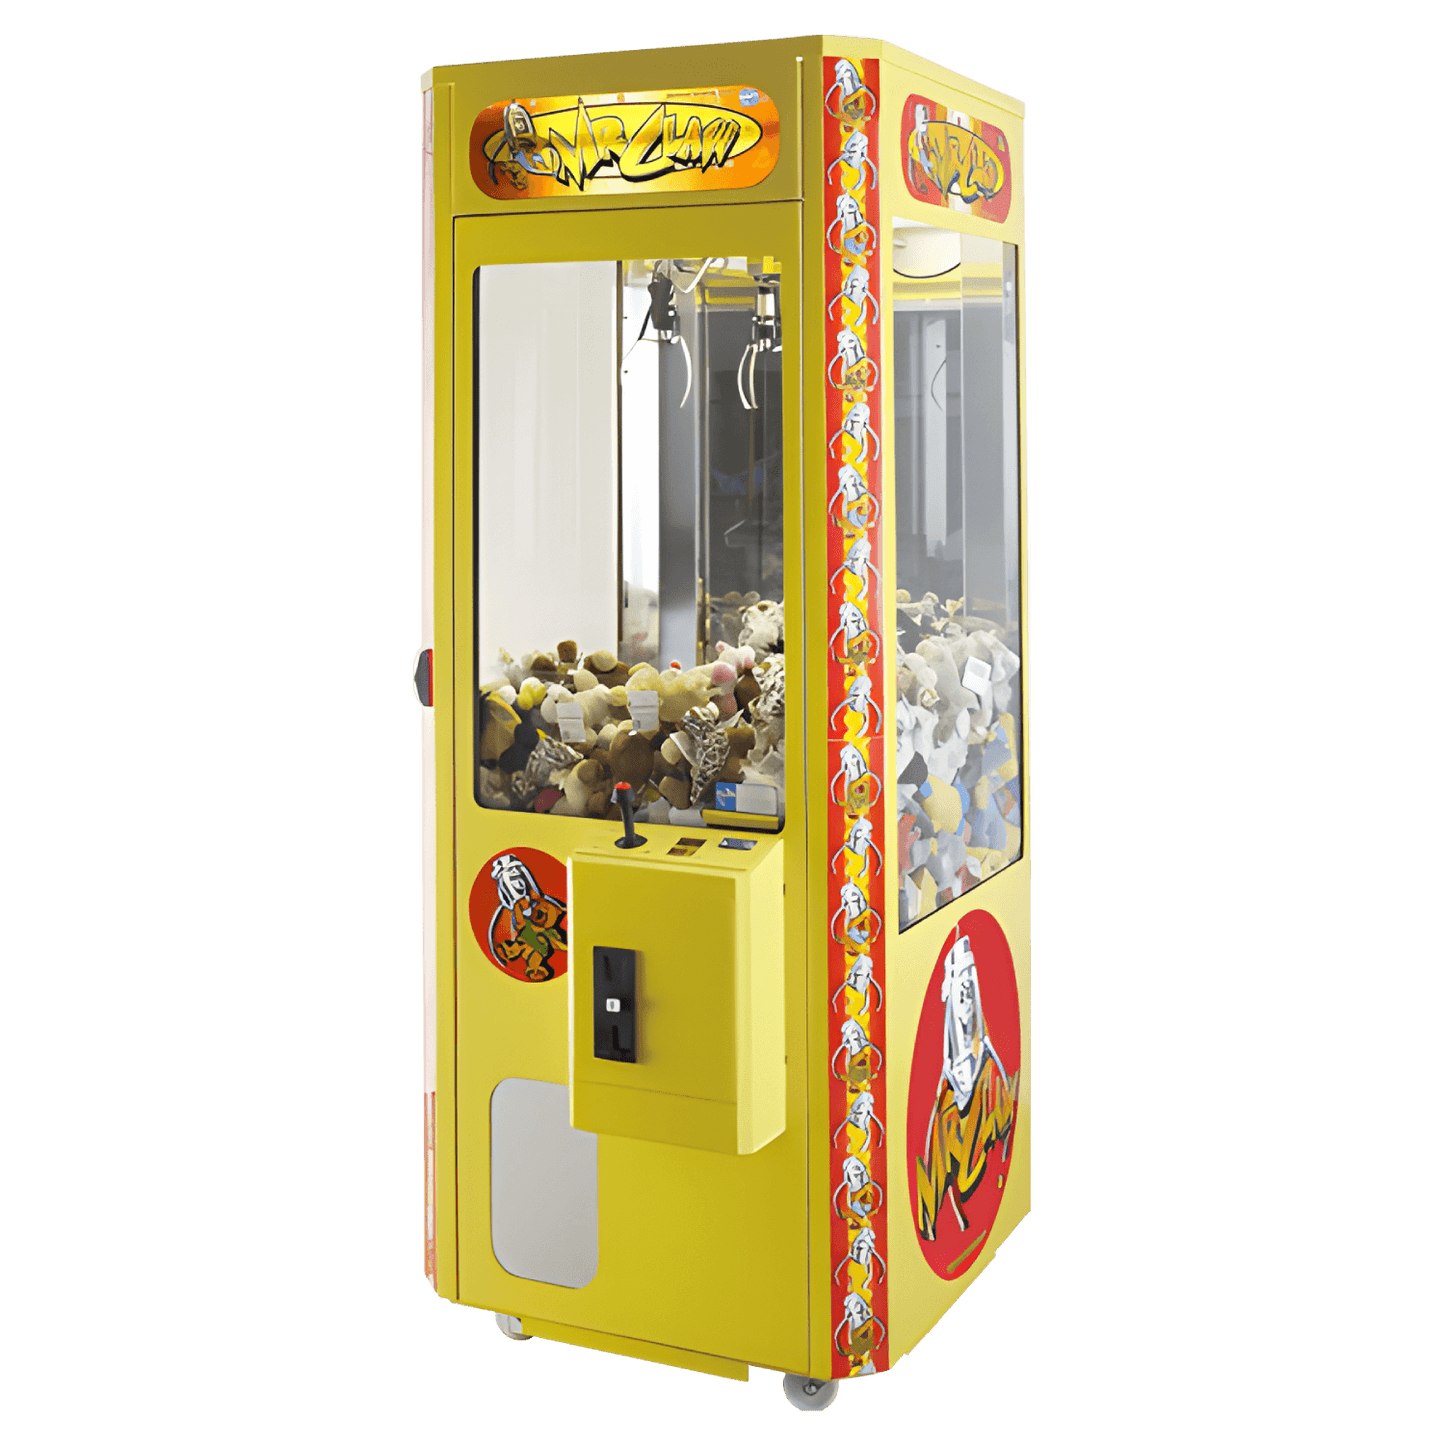 Greifautomat - Spielzeugautomat mit Plüschtieren Stock Photo